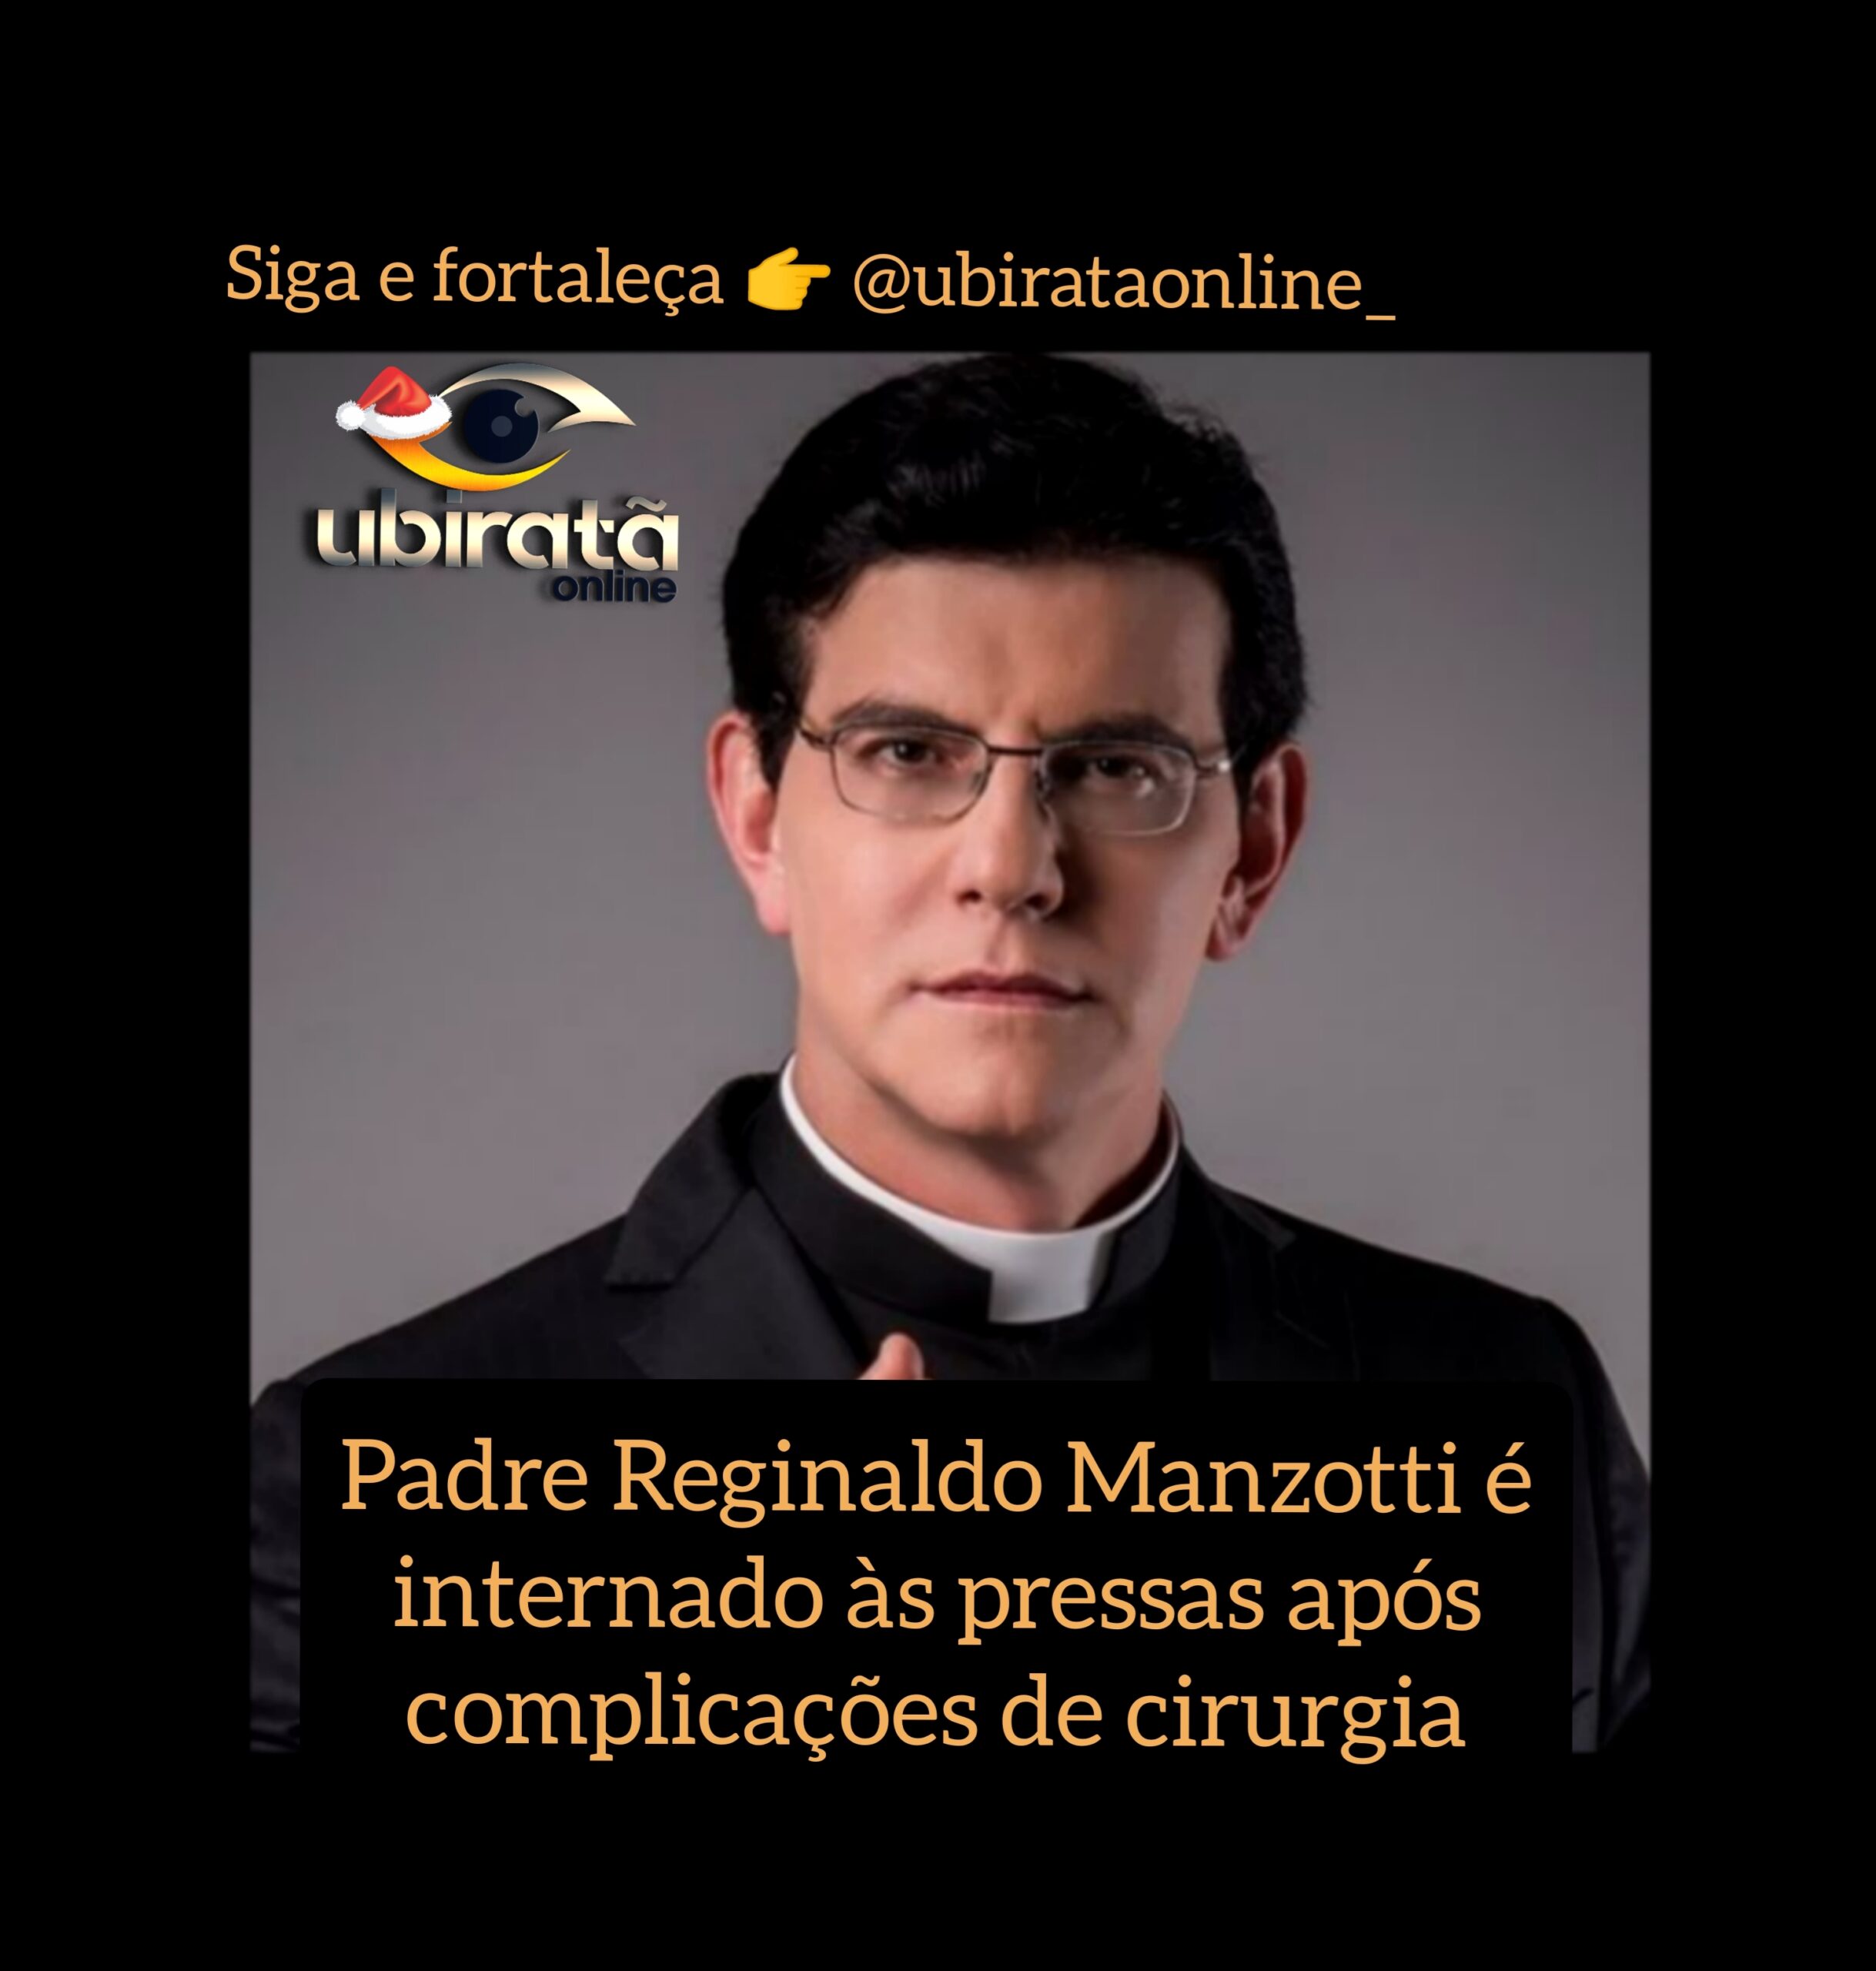 Padre Reginaldo Manzotti é internado às pressas após complicações de cirurgia